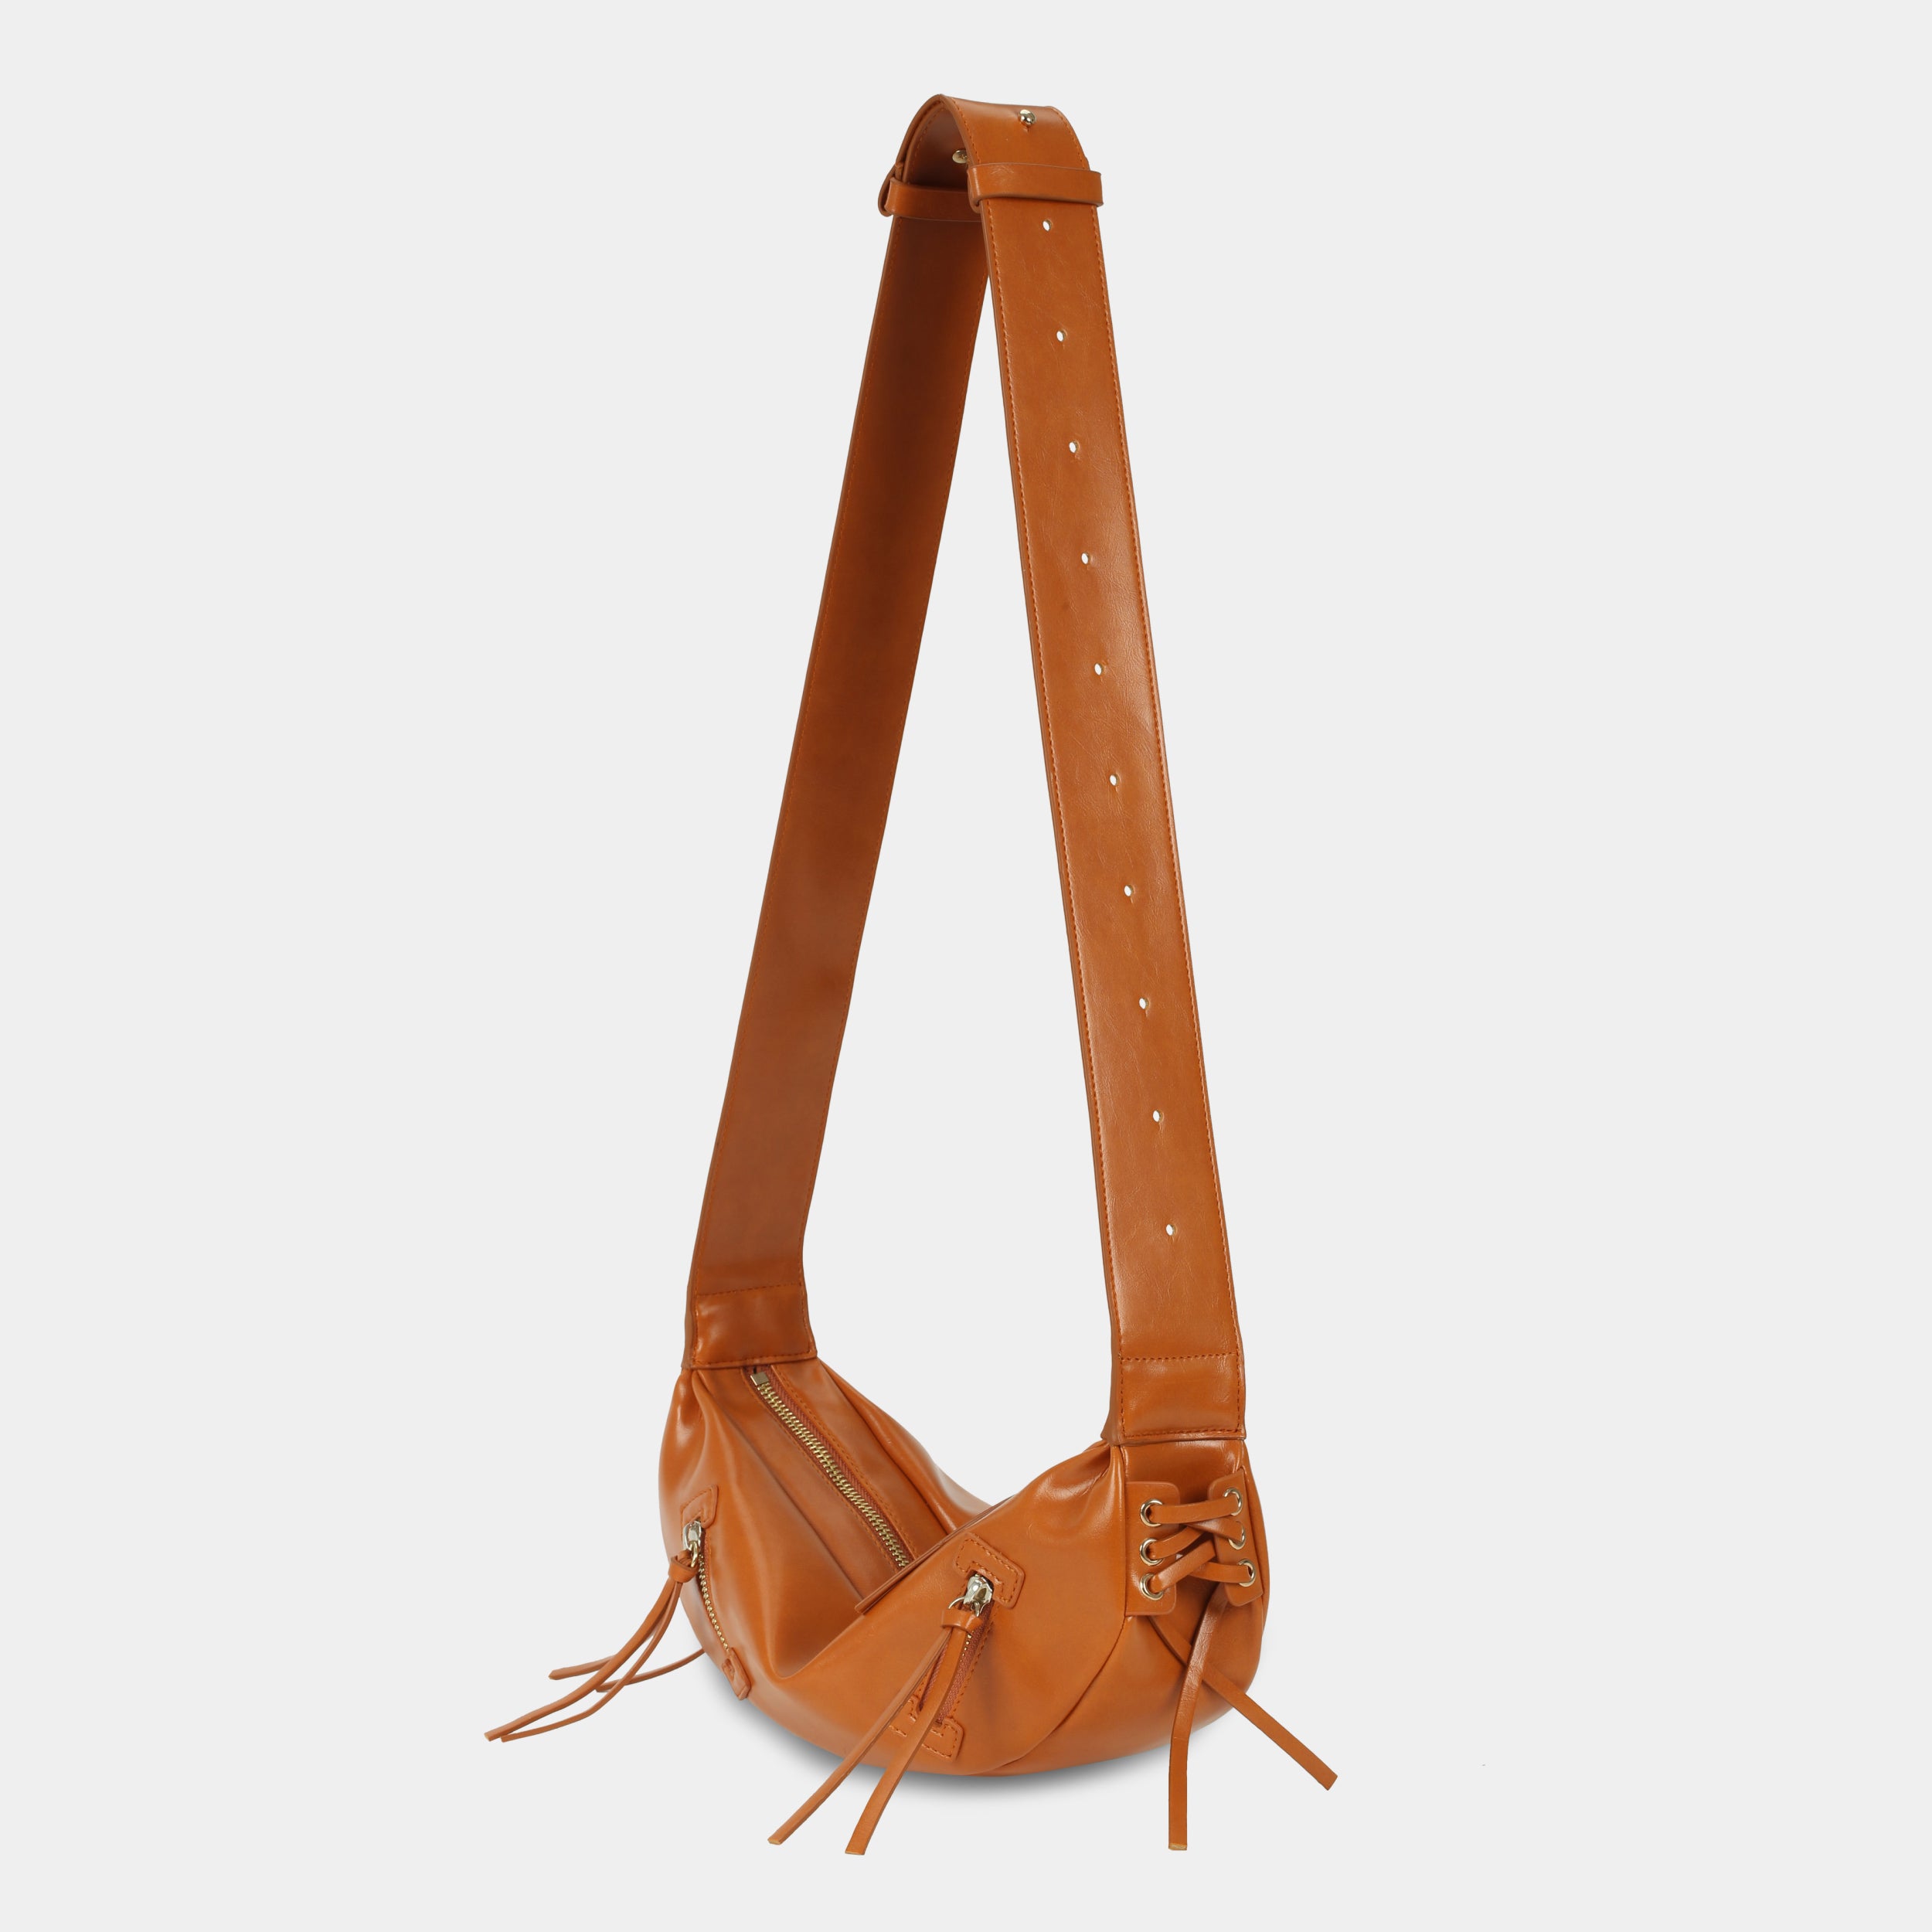 LACE bag large size (M) orange color